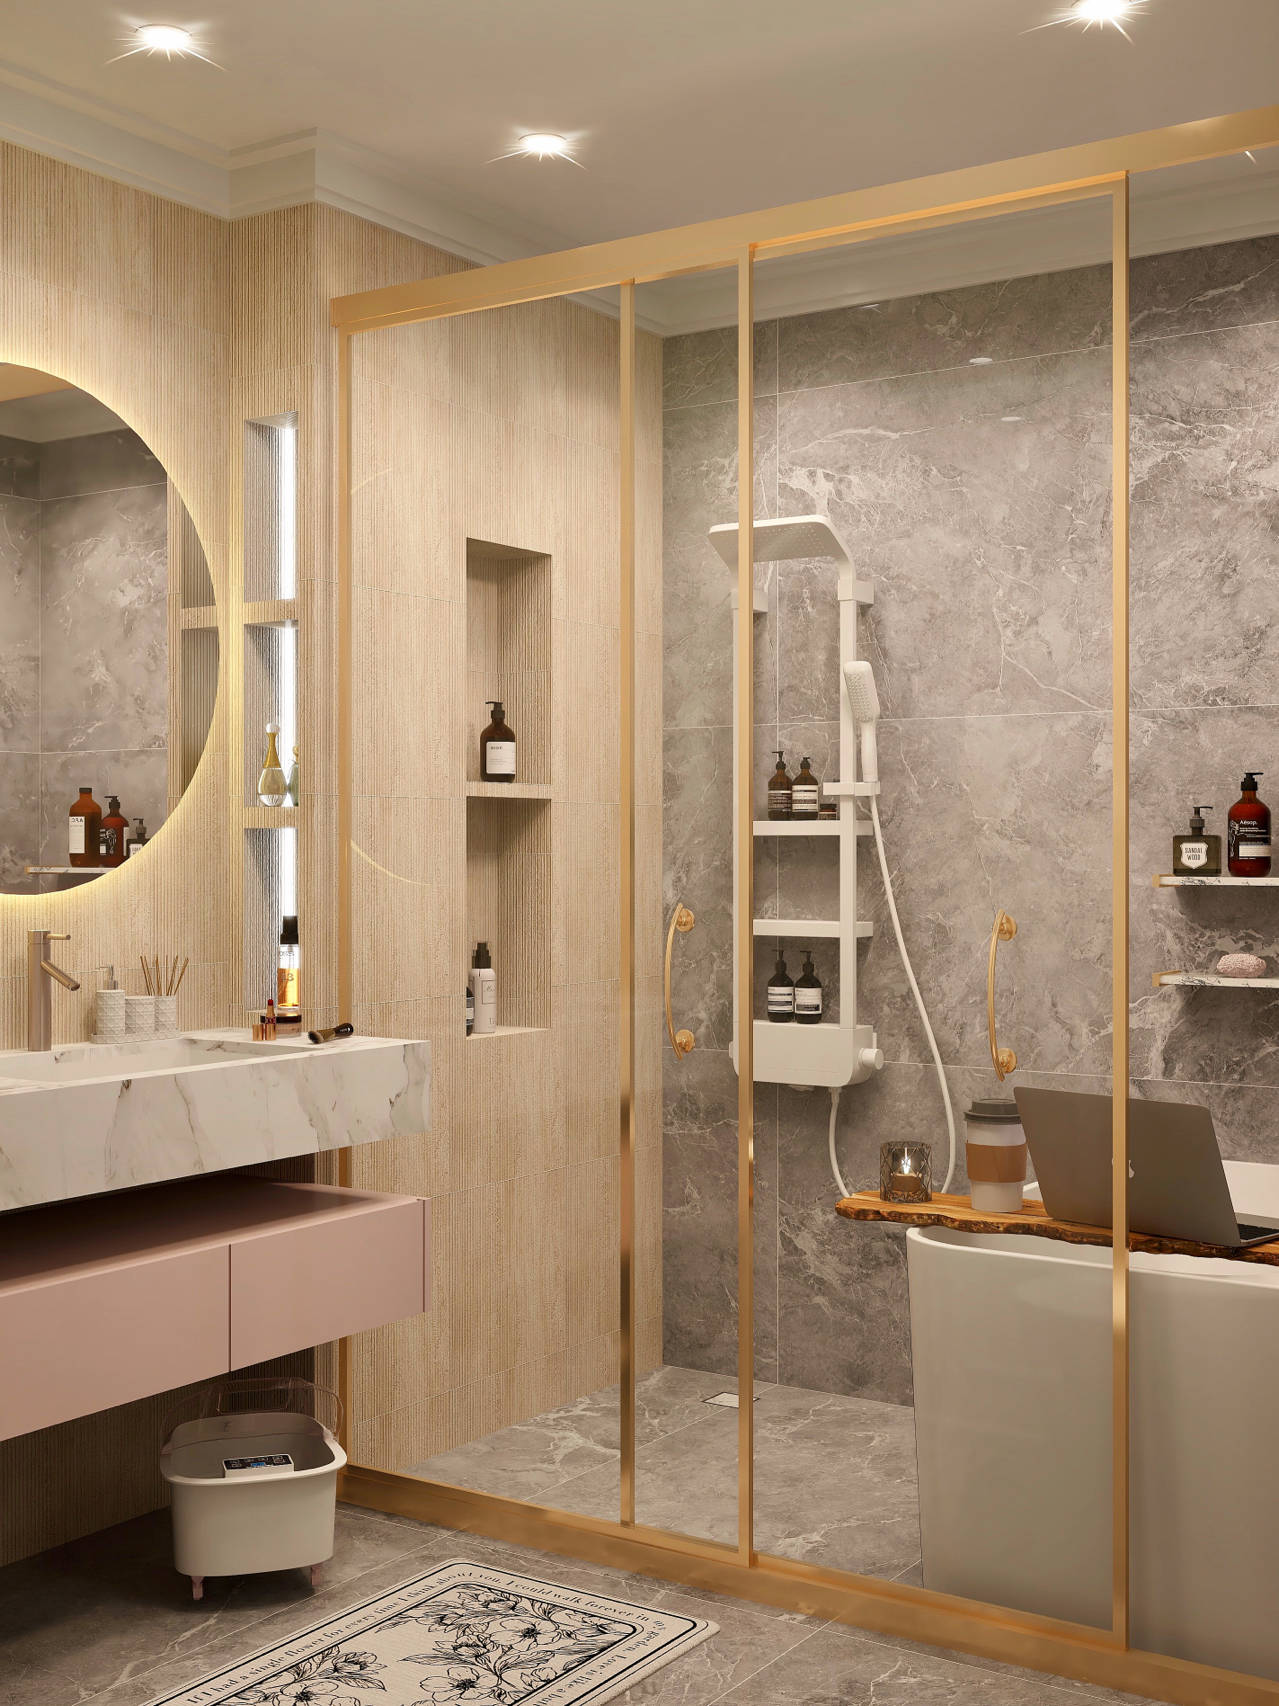 浴室设计灰质原木风尽显高品质生活